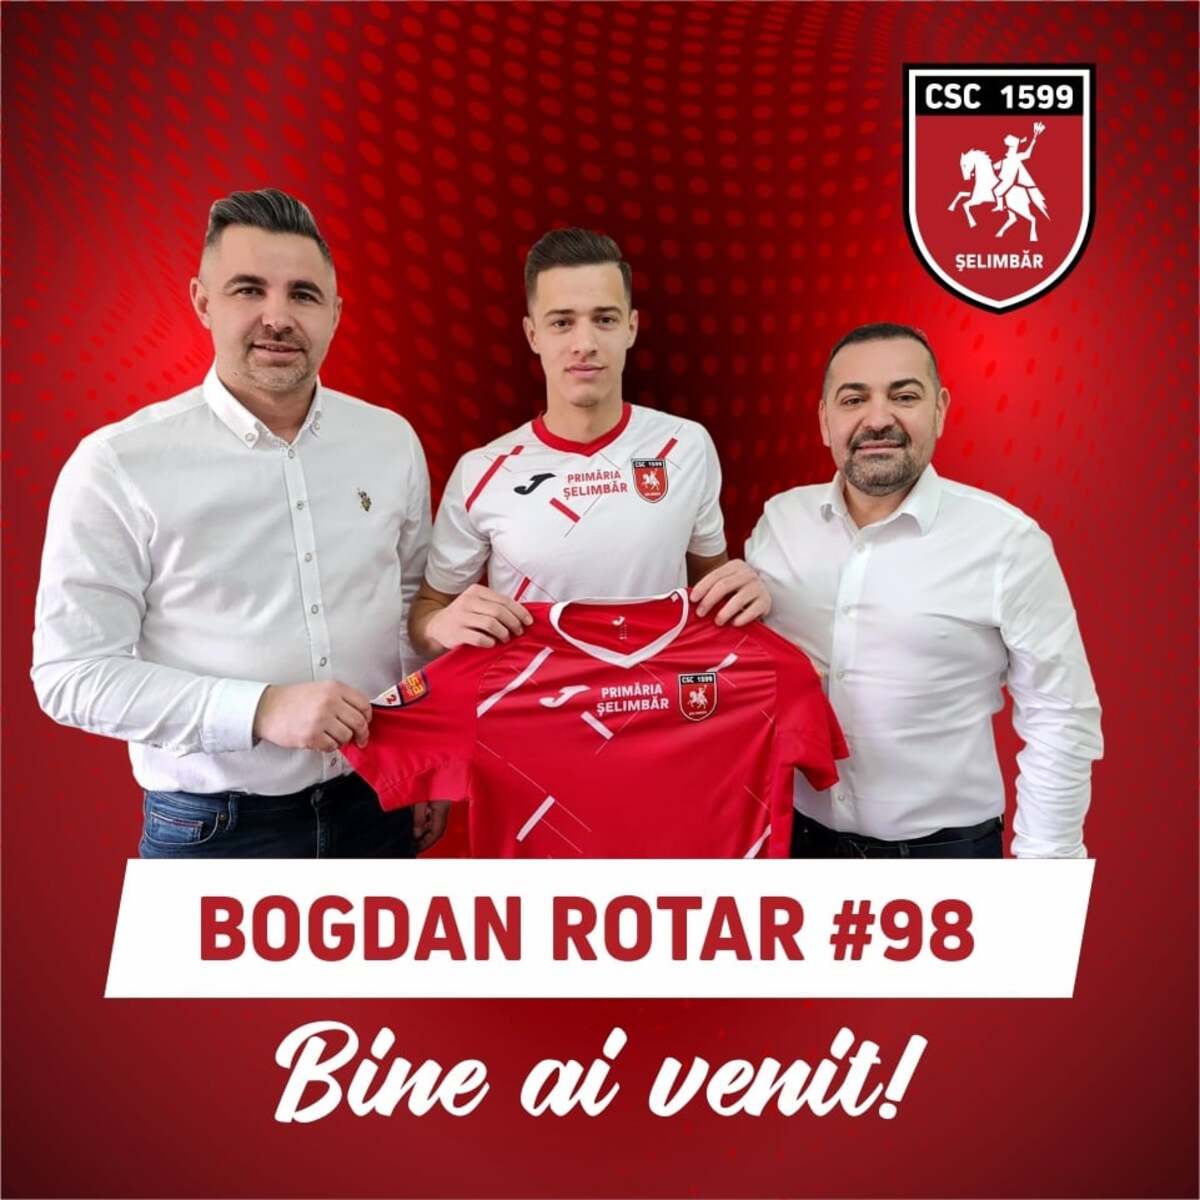 Bogdan Rotar revine la Șelimbăr. Sibianul, campion național U19 cu FK Csikszereda, în 2021, e ”cavaler roșu” până la finalul sezonului